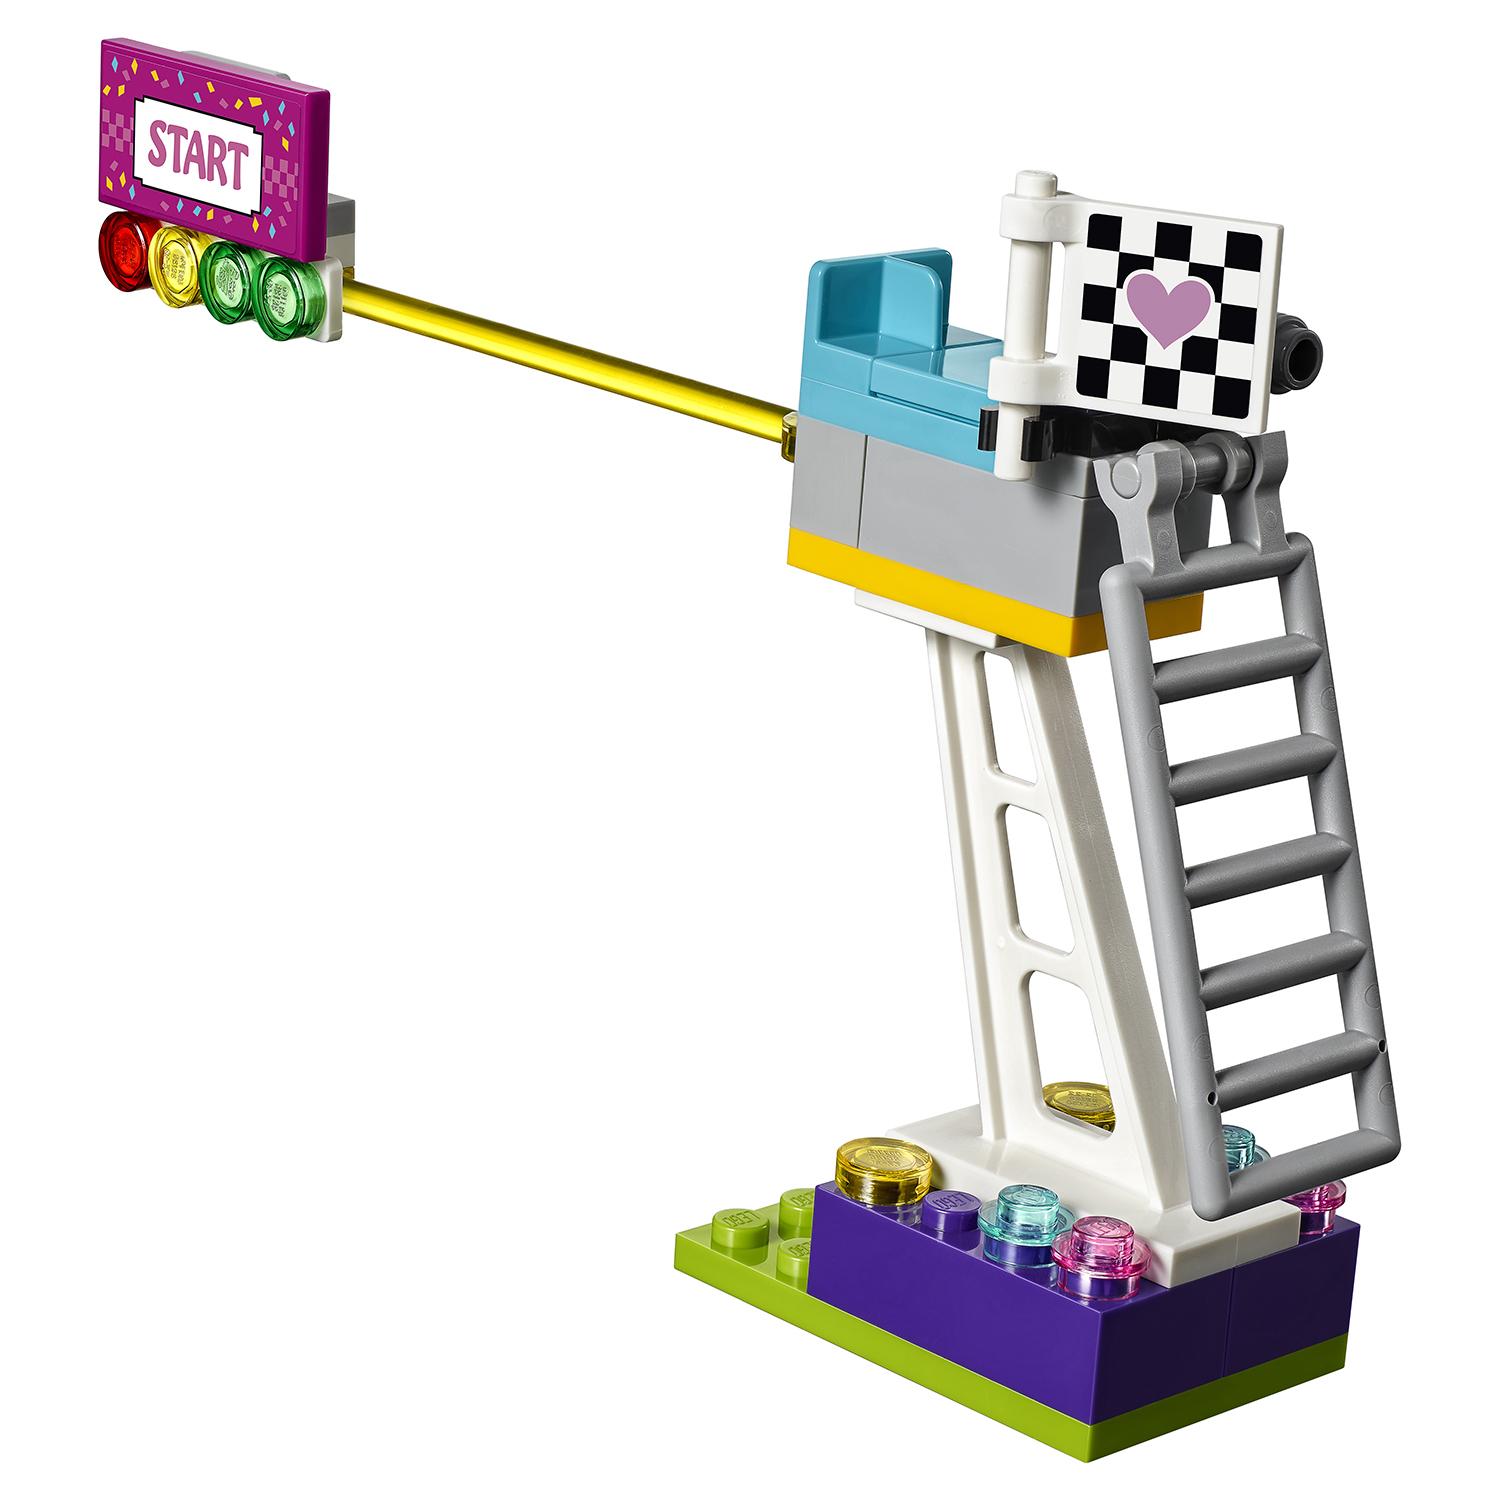 Конструктор Lego Friends - Большая гонка  